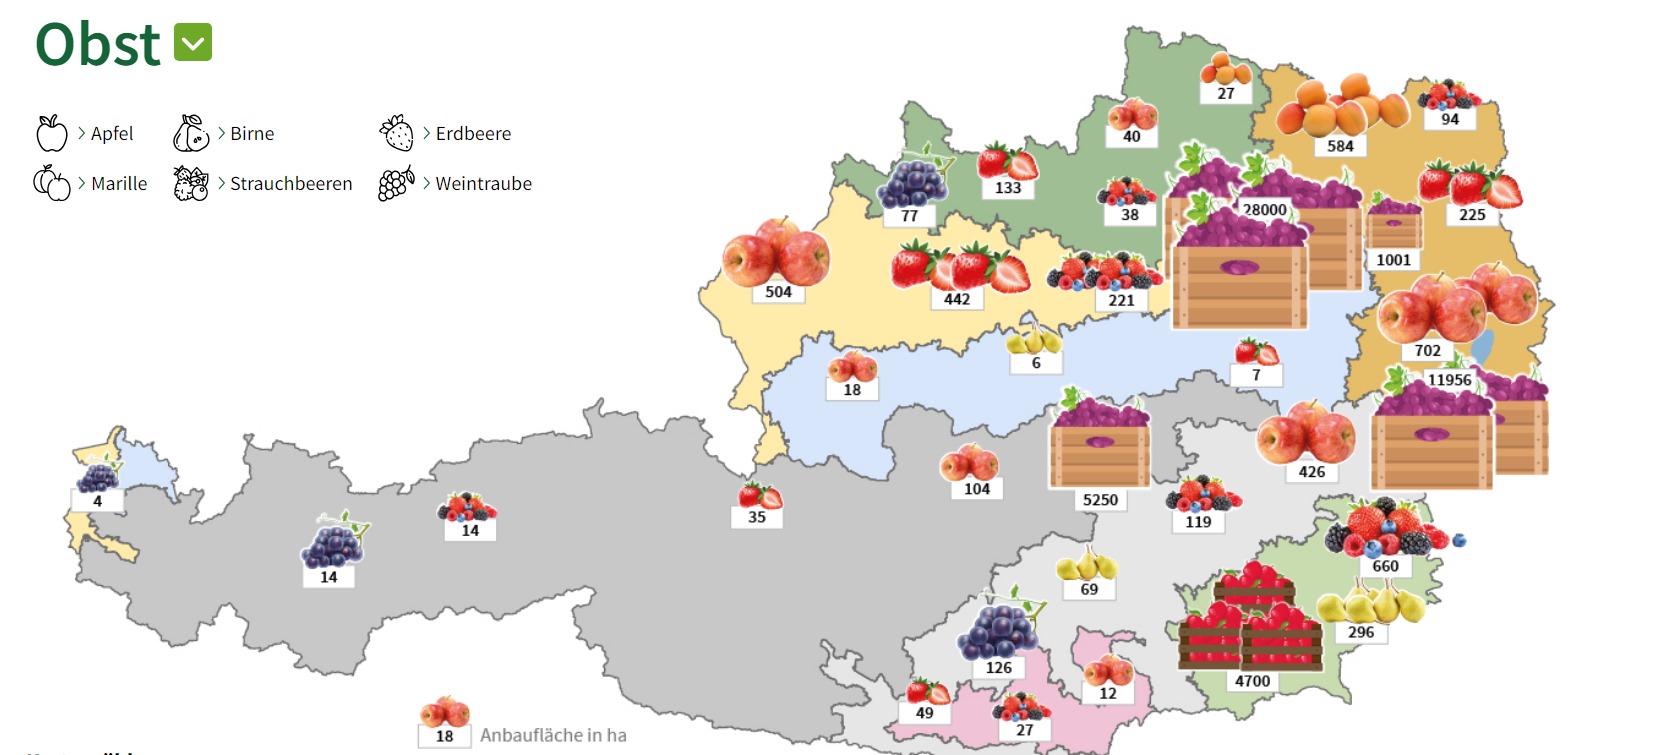 Eine Österreichkarte mit Kennzeichnung der Obstsorten die in den Bundesländern angebaut werden und die Menge an Anbaufläche.